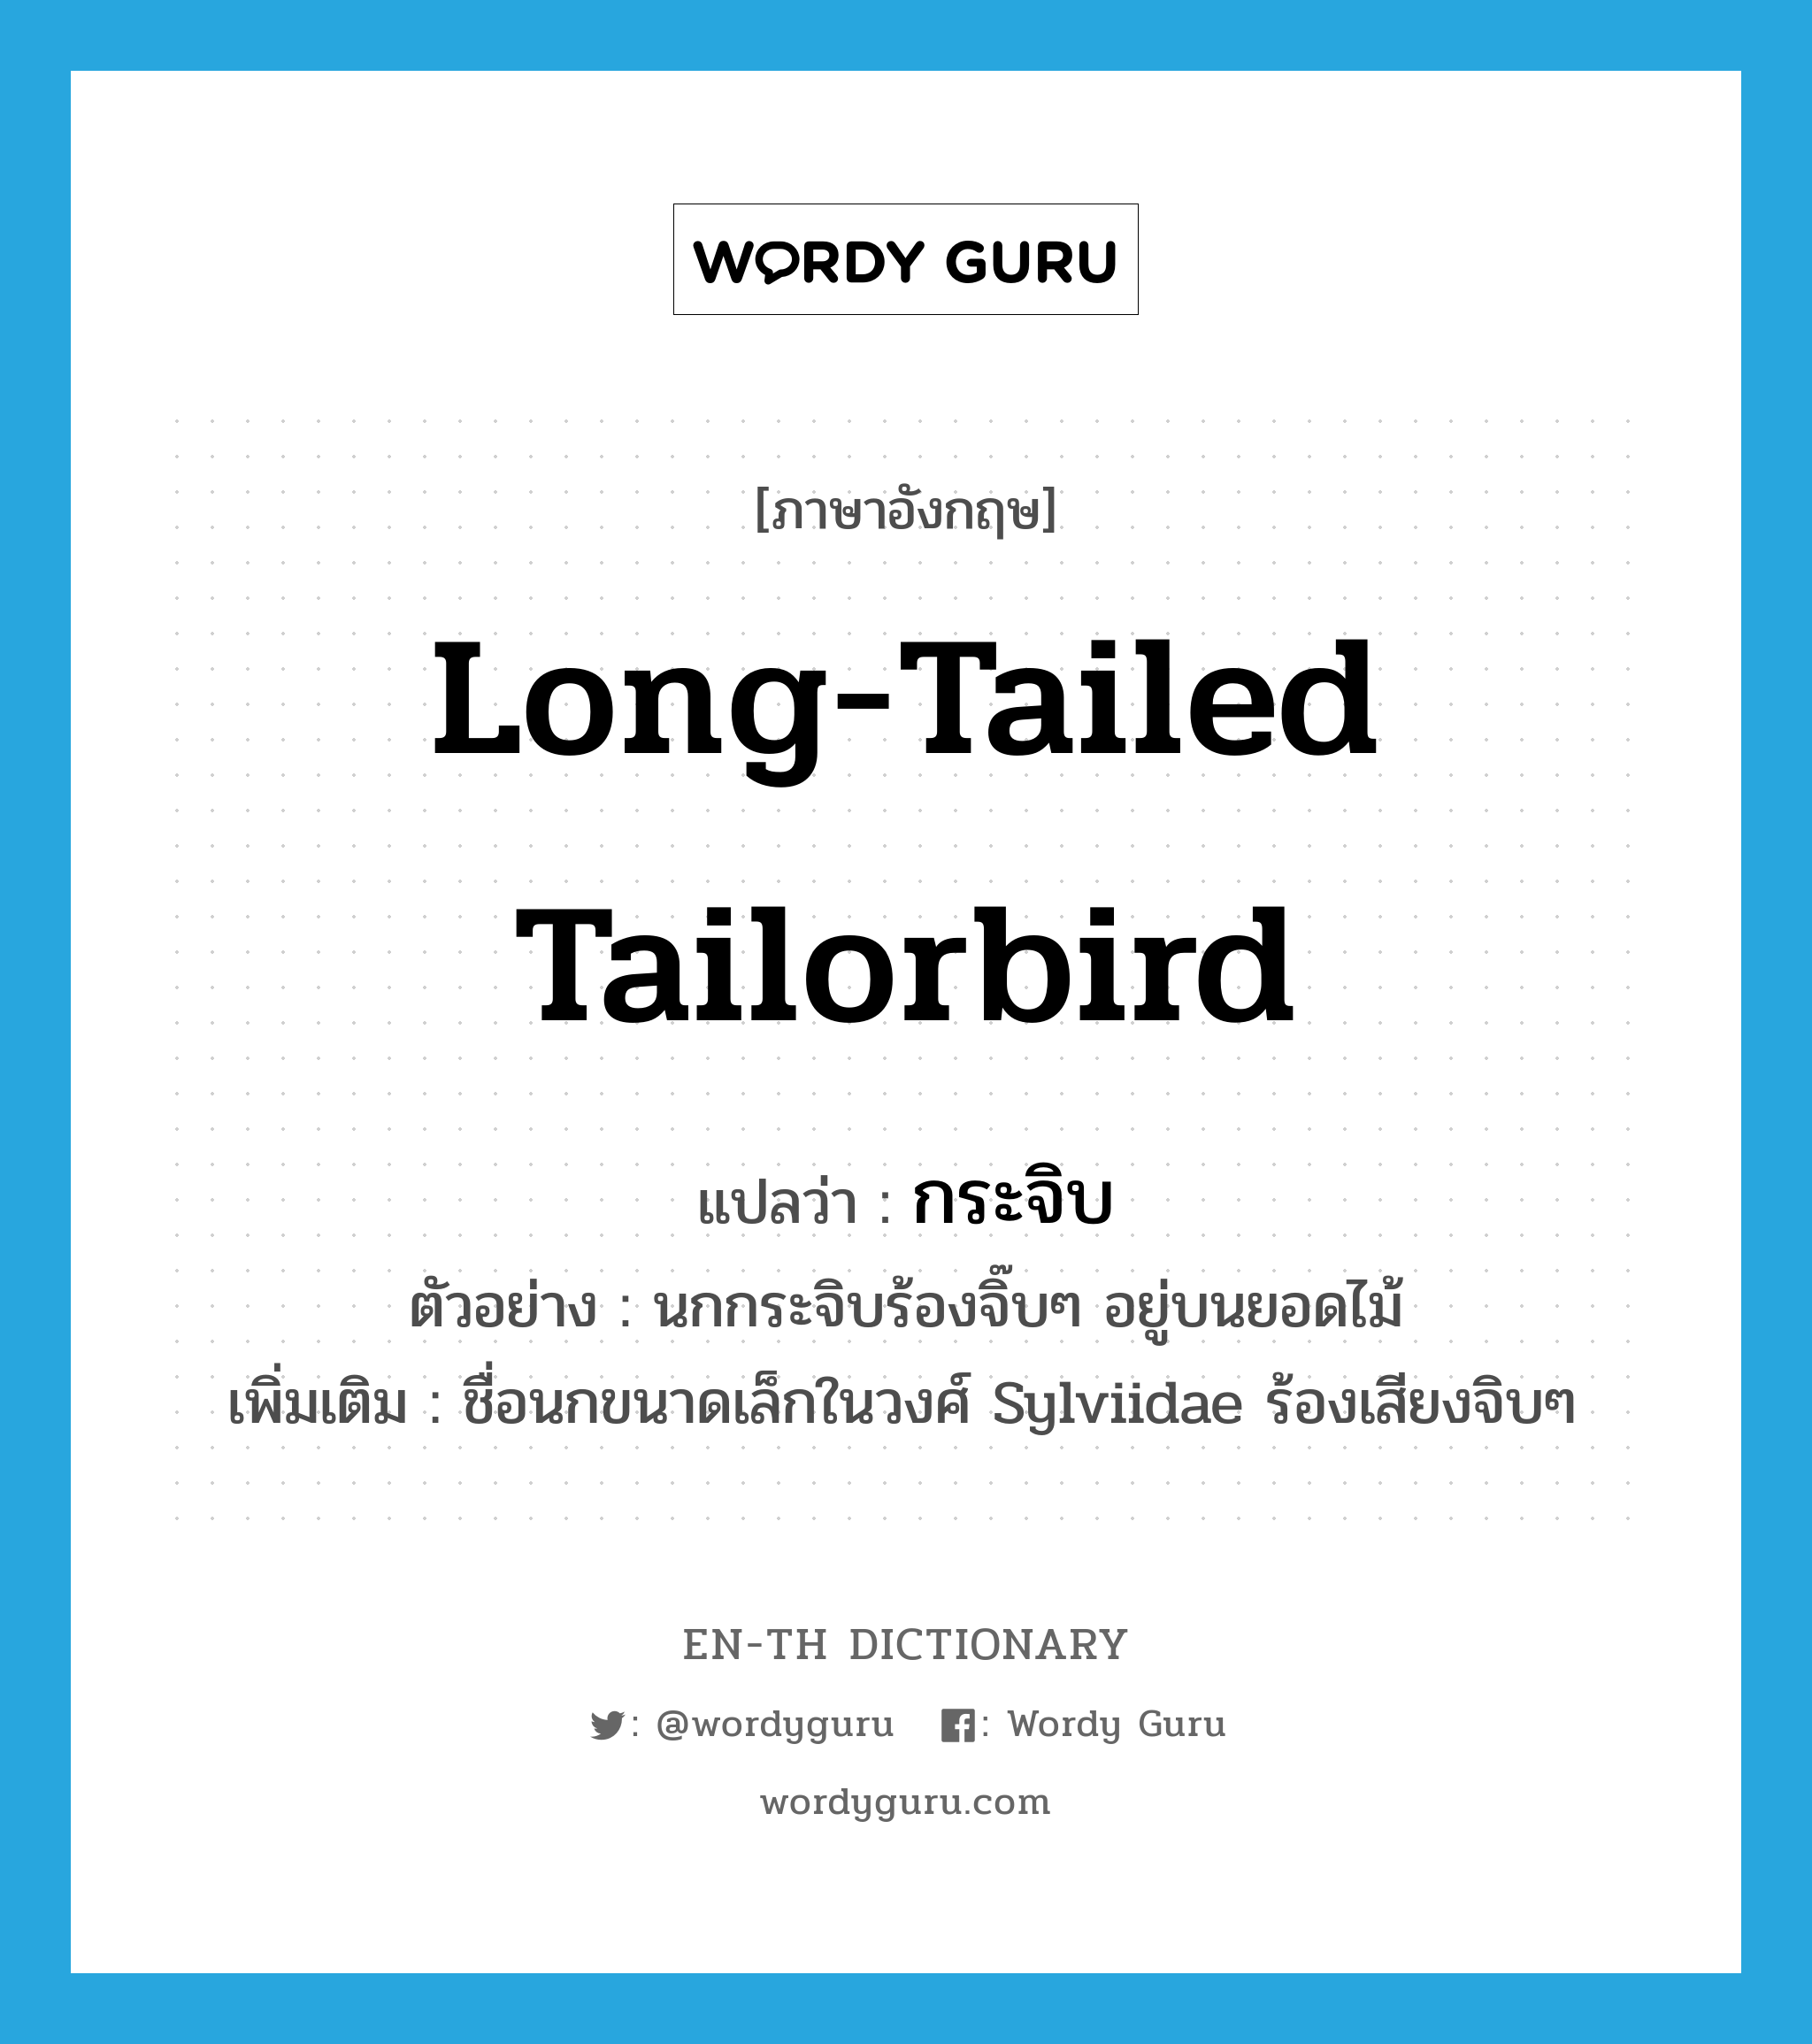 กระจิบ ภาษาอังกฤษ?, คำศัพท์ภาษาอังกฤษ กระจิบ แปลว่า Long-tailed Tailorbird ประเภท N ตัวอย่าง นกกระจิบร้องจิ๊บๆ อยู่บนยอดไม้ เพิ่มเติม ชื่อนกขนาดเล็กในวงศ์ Sylviidae ร้องเสียงจิบๆ หมวด N